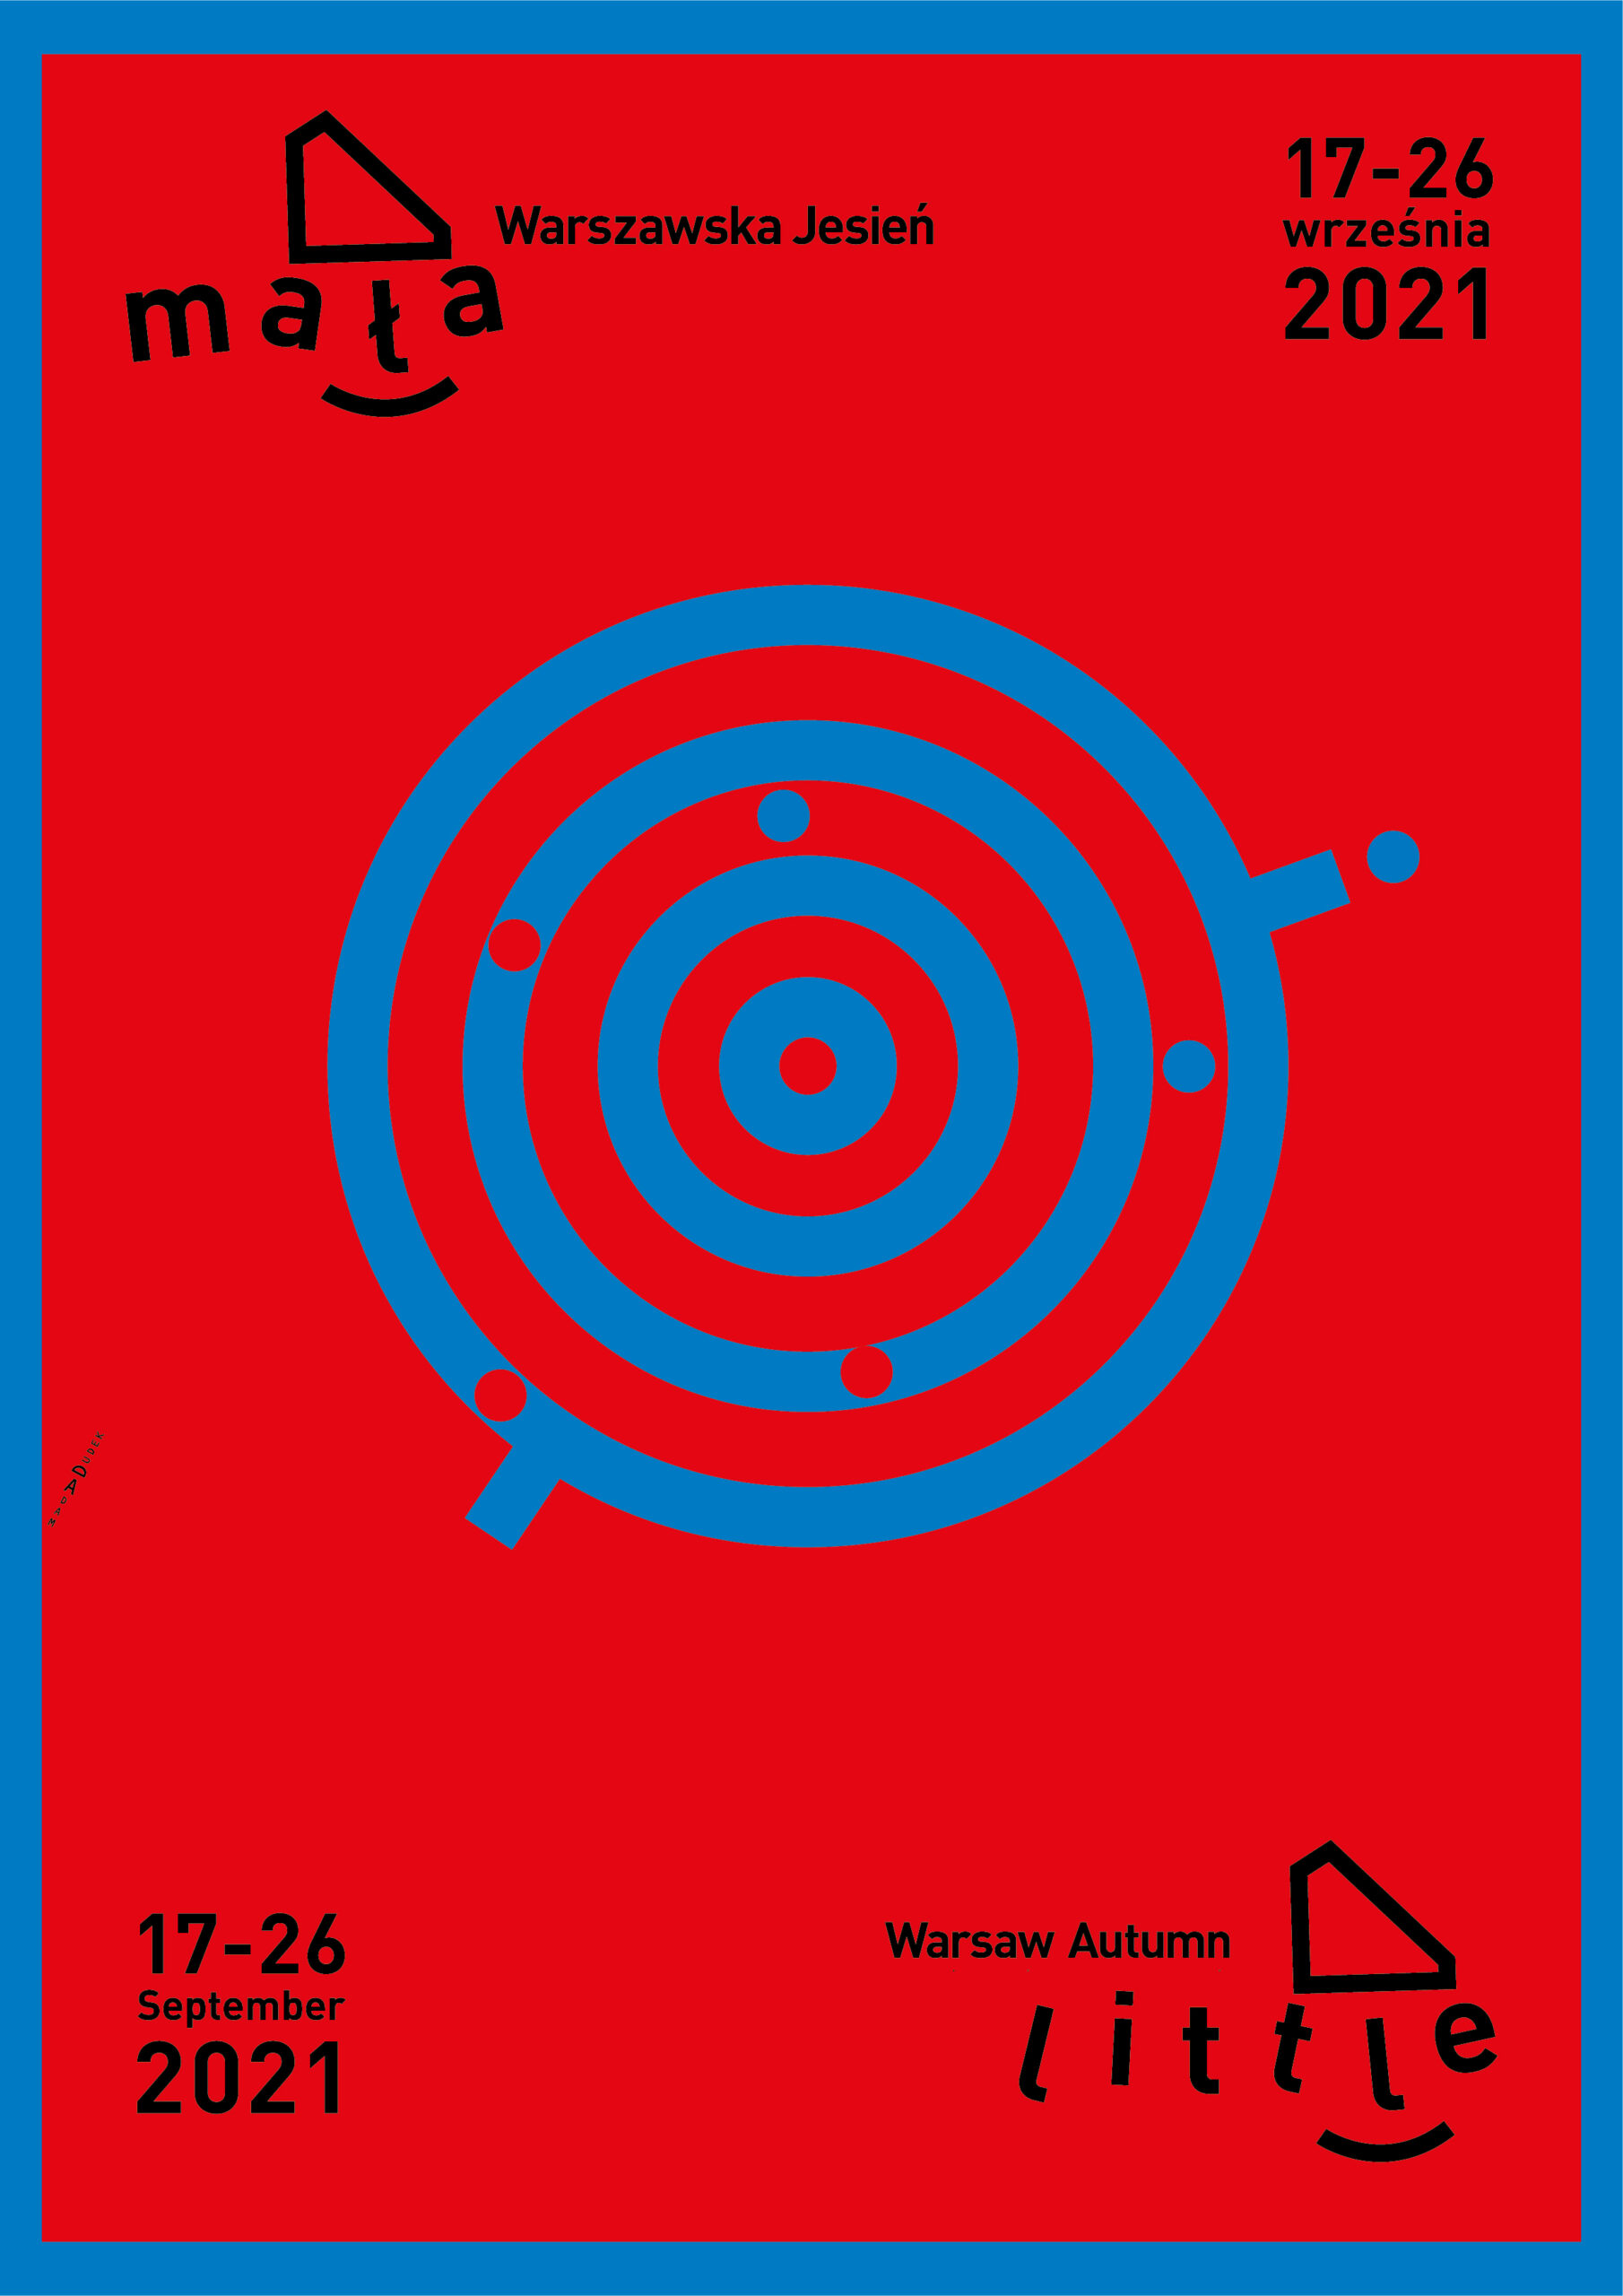 adam dudek plakat warszawska jesień warsaw autumn graphic design projekt graficzny